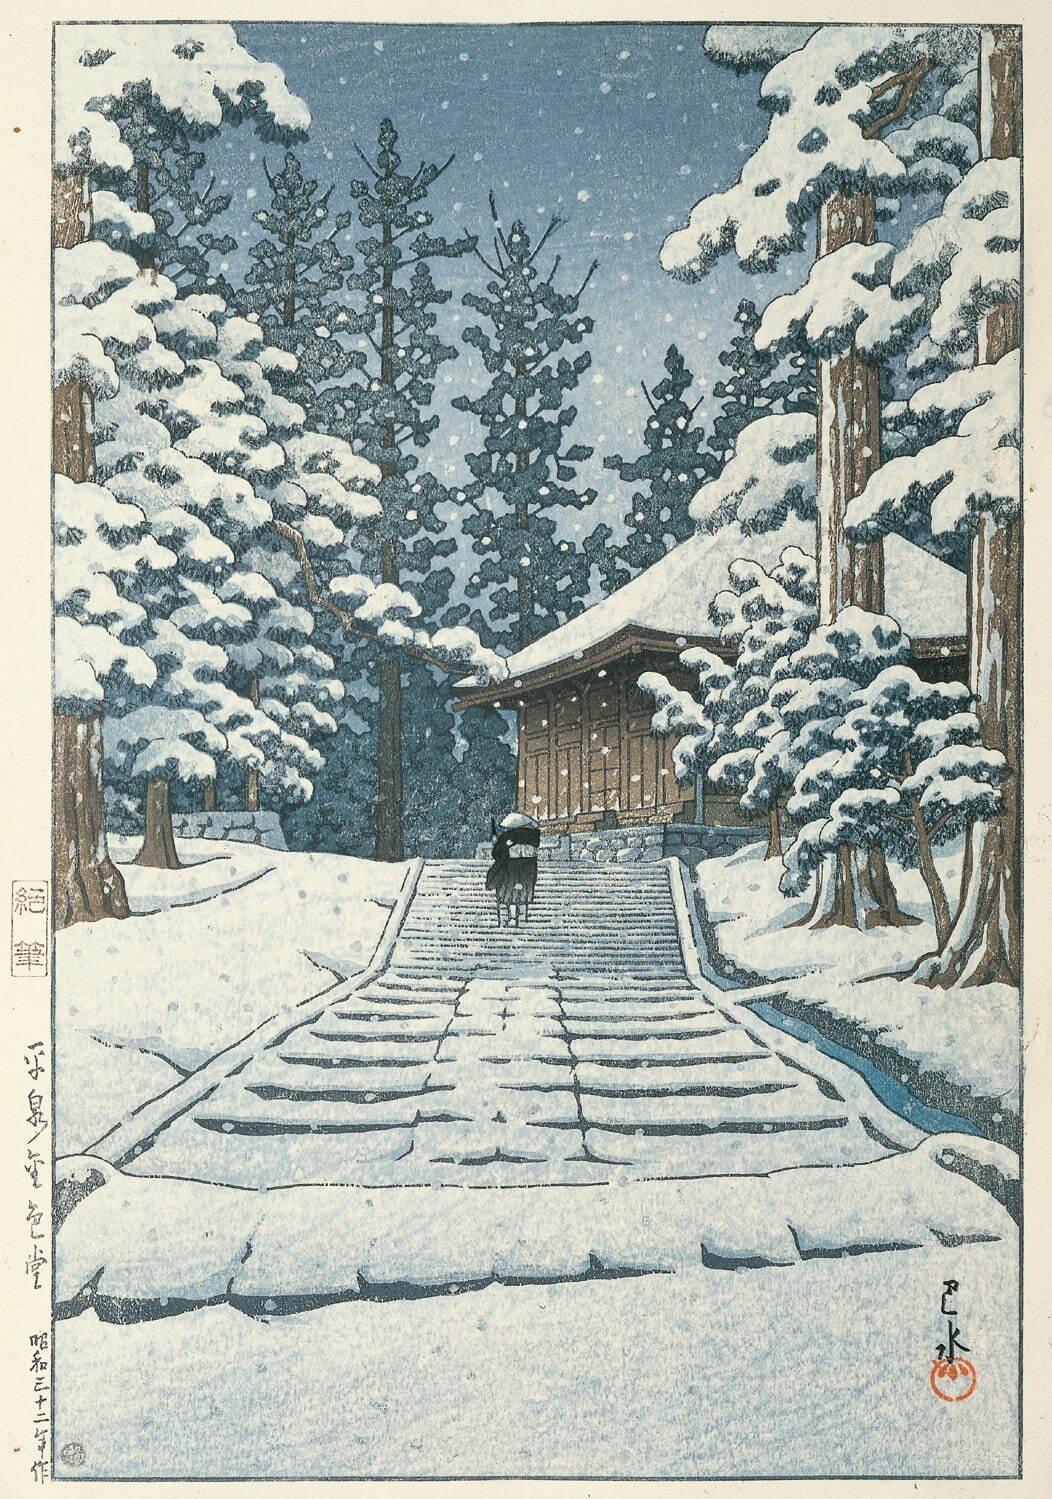 川瀬巴水 《平泉金色堂》
昭和32年(1957年) 渡邊木版美術画舗蔵